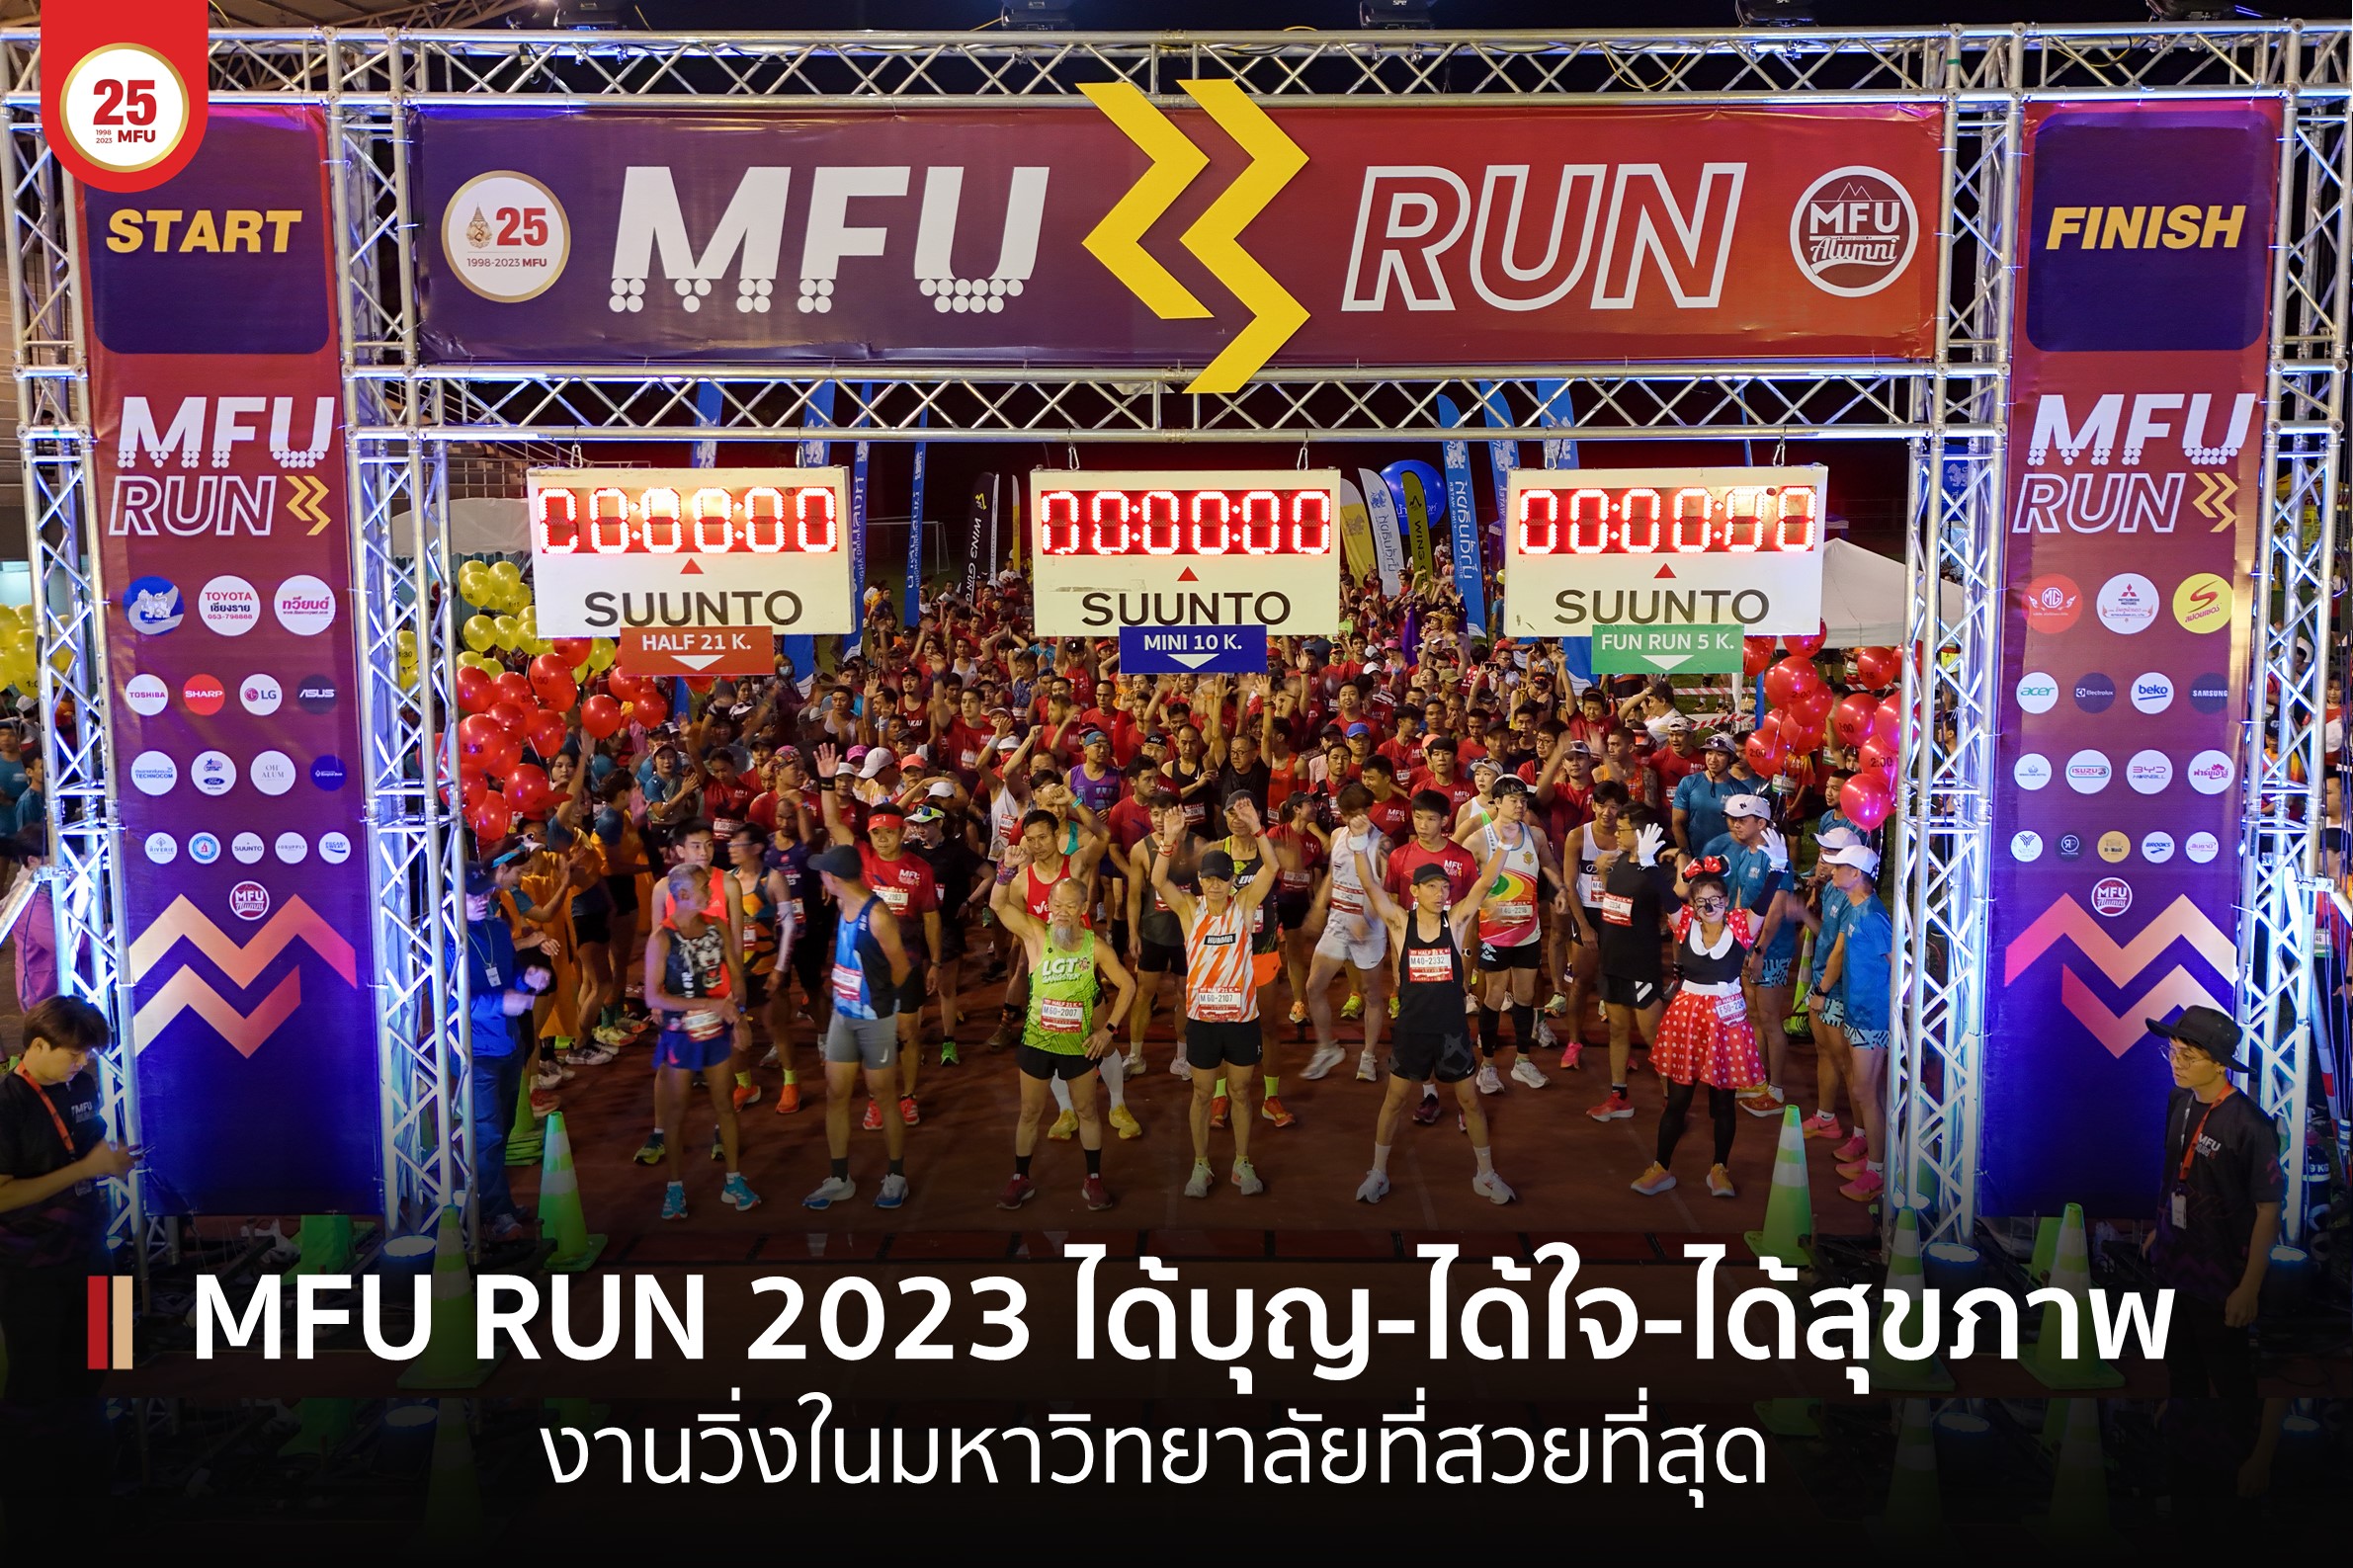 MFU RUN 2023 งานวิ่งในมหาวิทยาลัยที่สวยที่สุดในใจ ได้บุญ-ได้ใจ-ได้สุขภาพ